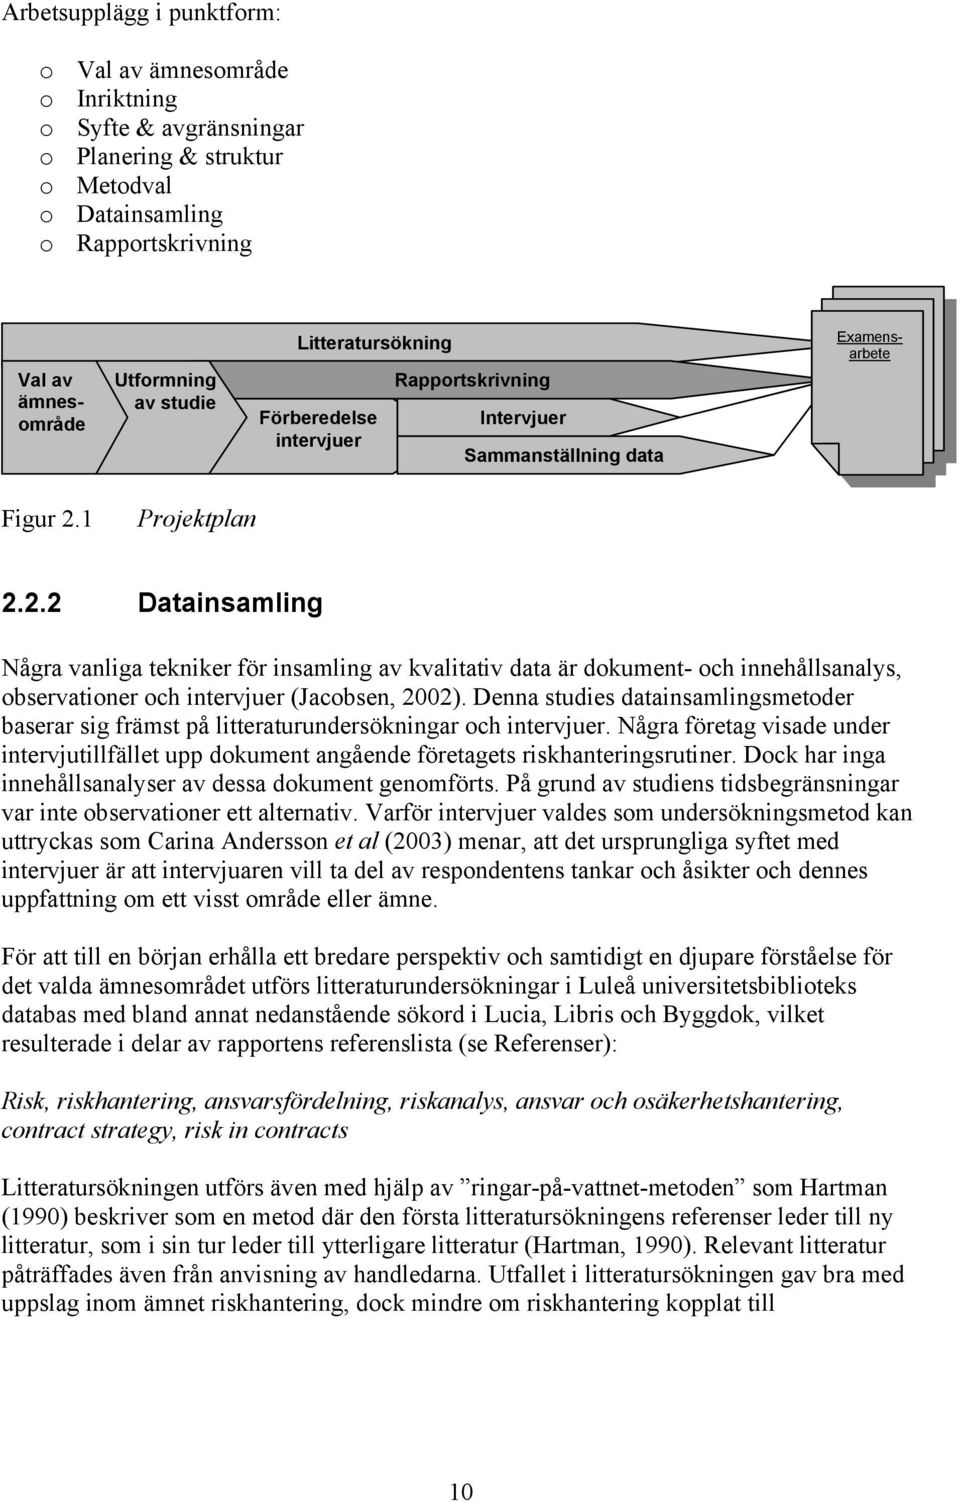 1 Projektplan 2.2.2 Datainsamling Några vanliga tekniker för insamling av kvalitativ data är dokument- och innehållsanalys, observationer och intervjuer (Jacobsen, 2002).